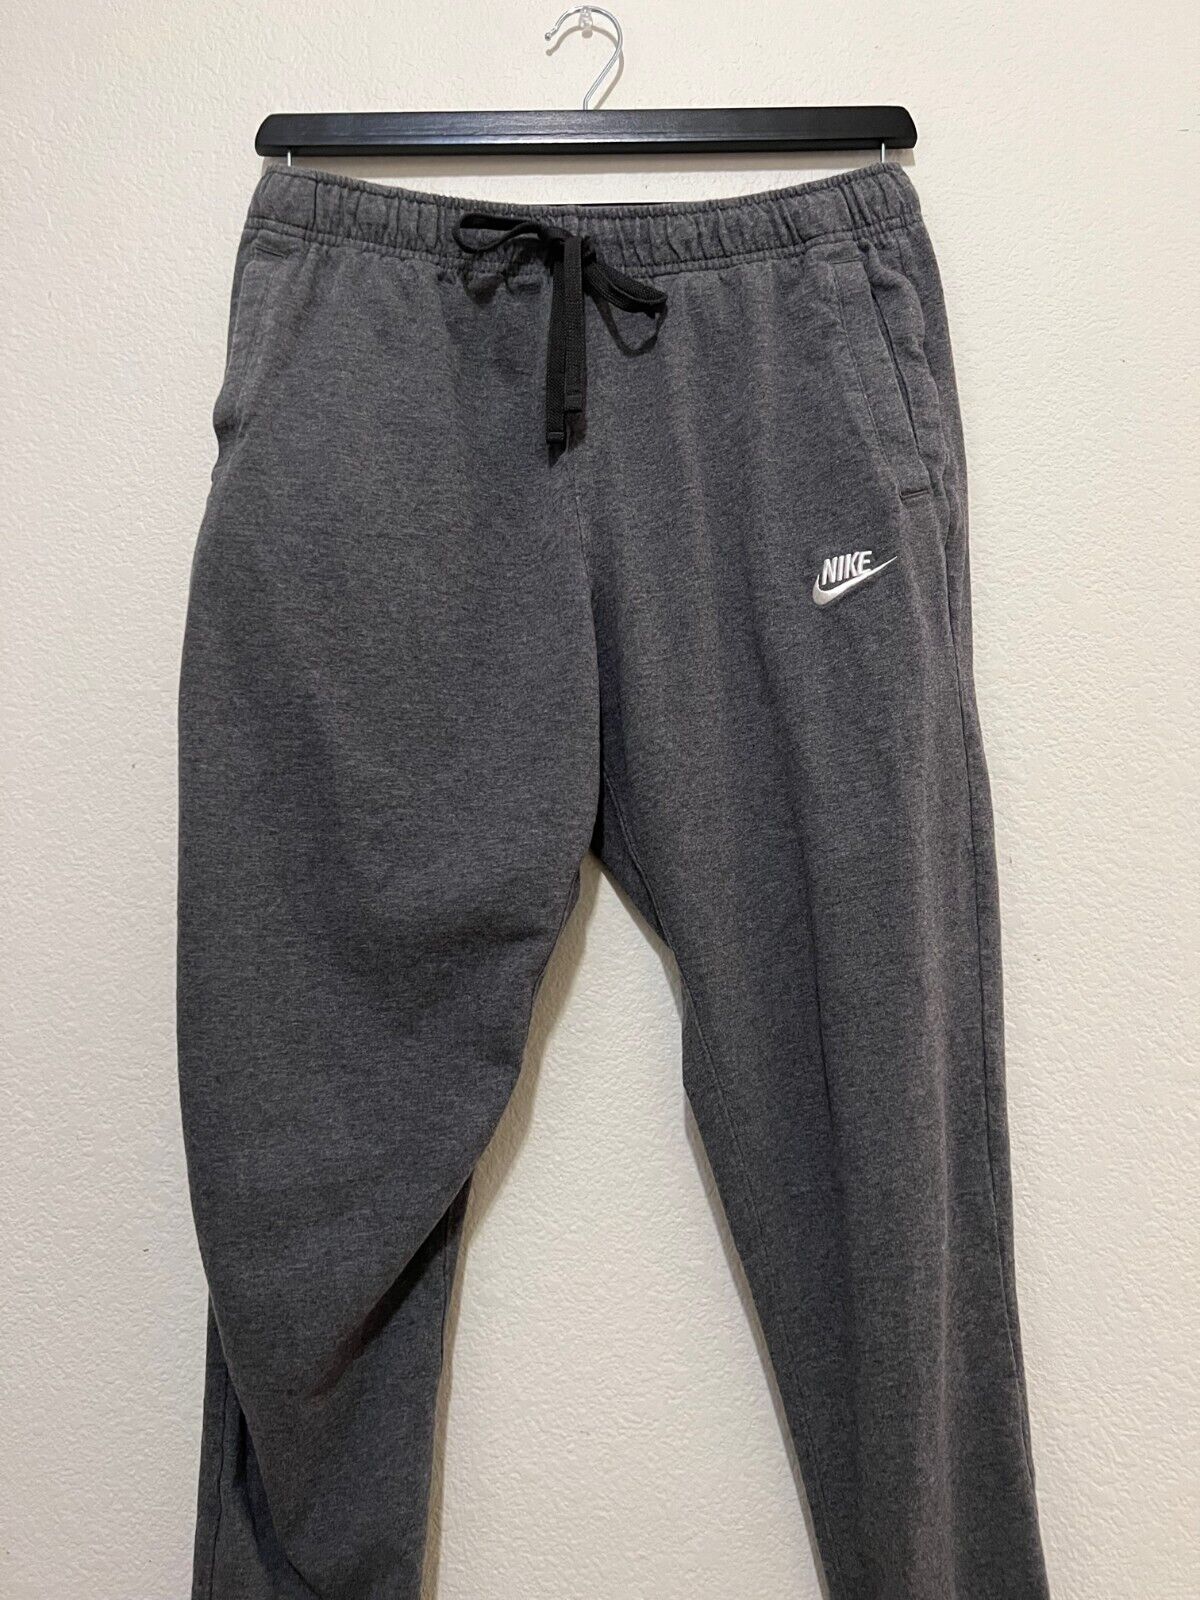 Nike - Men's Jogger Pants (size S)